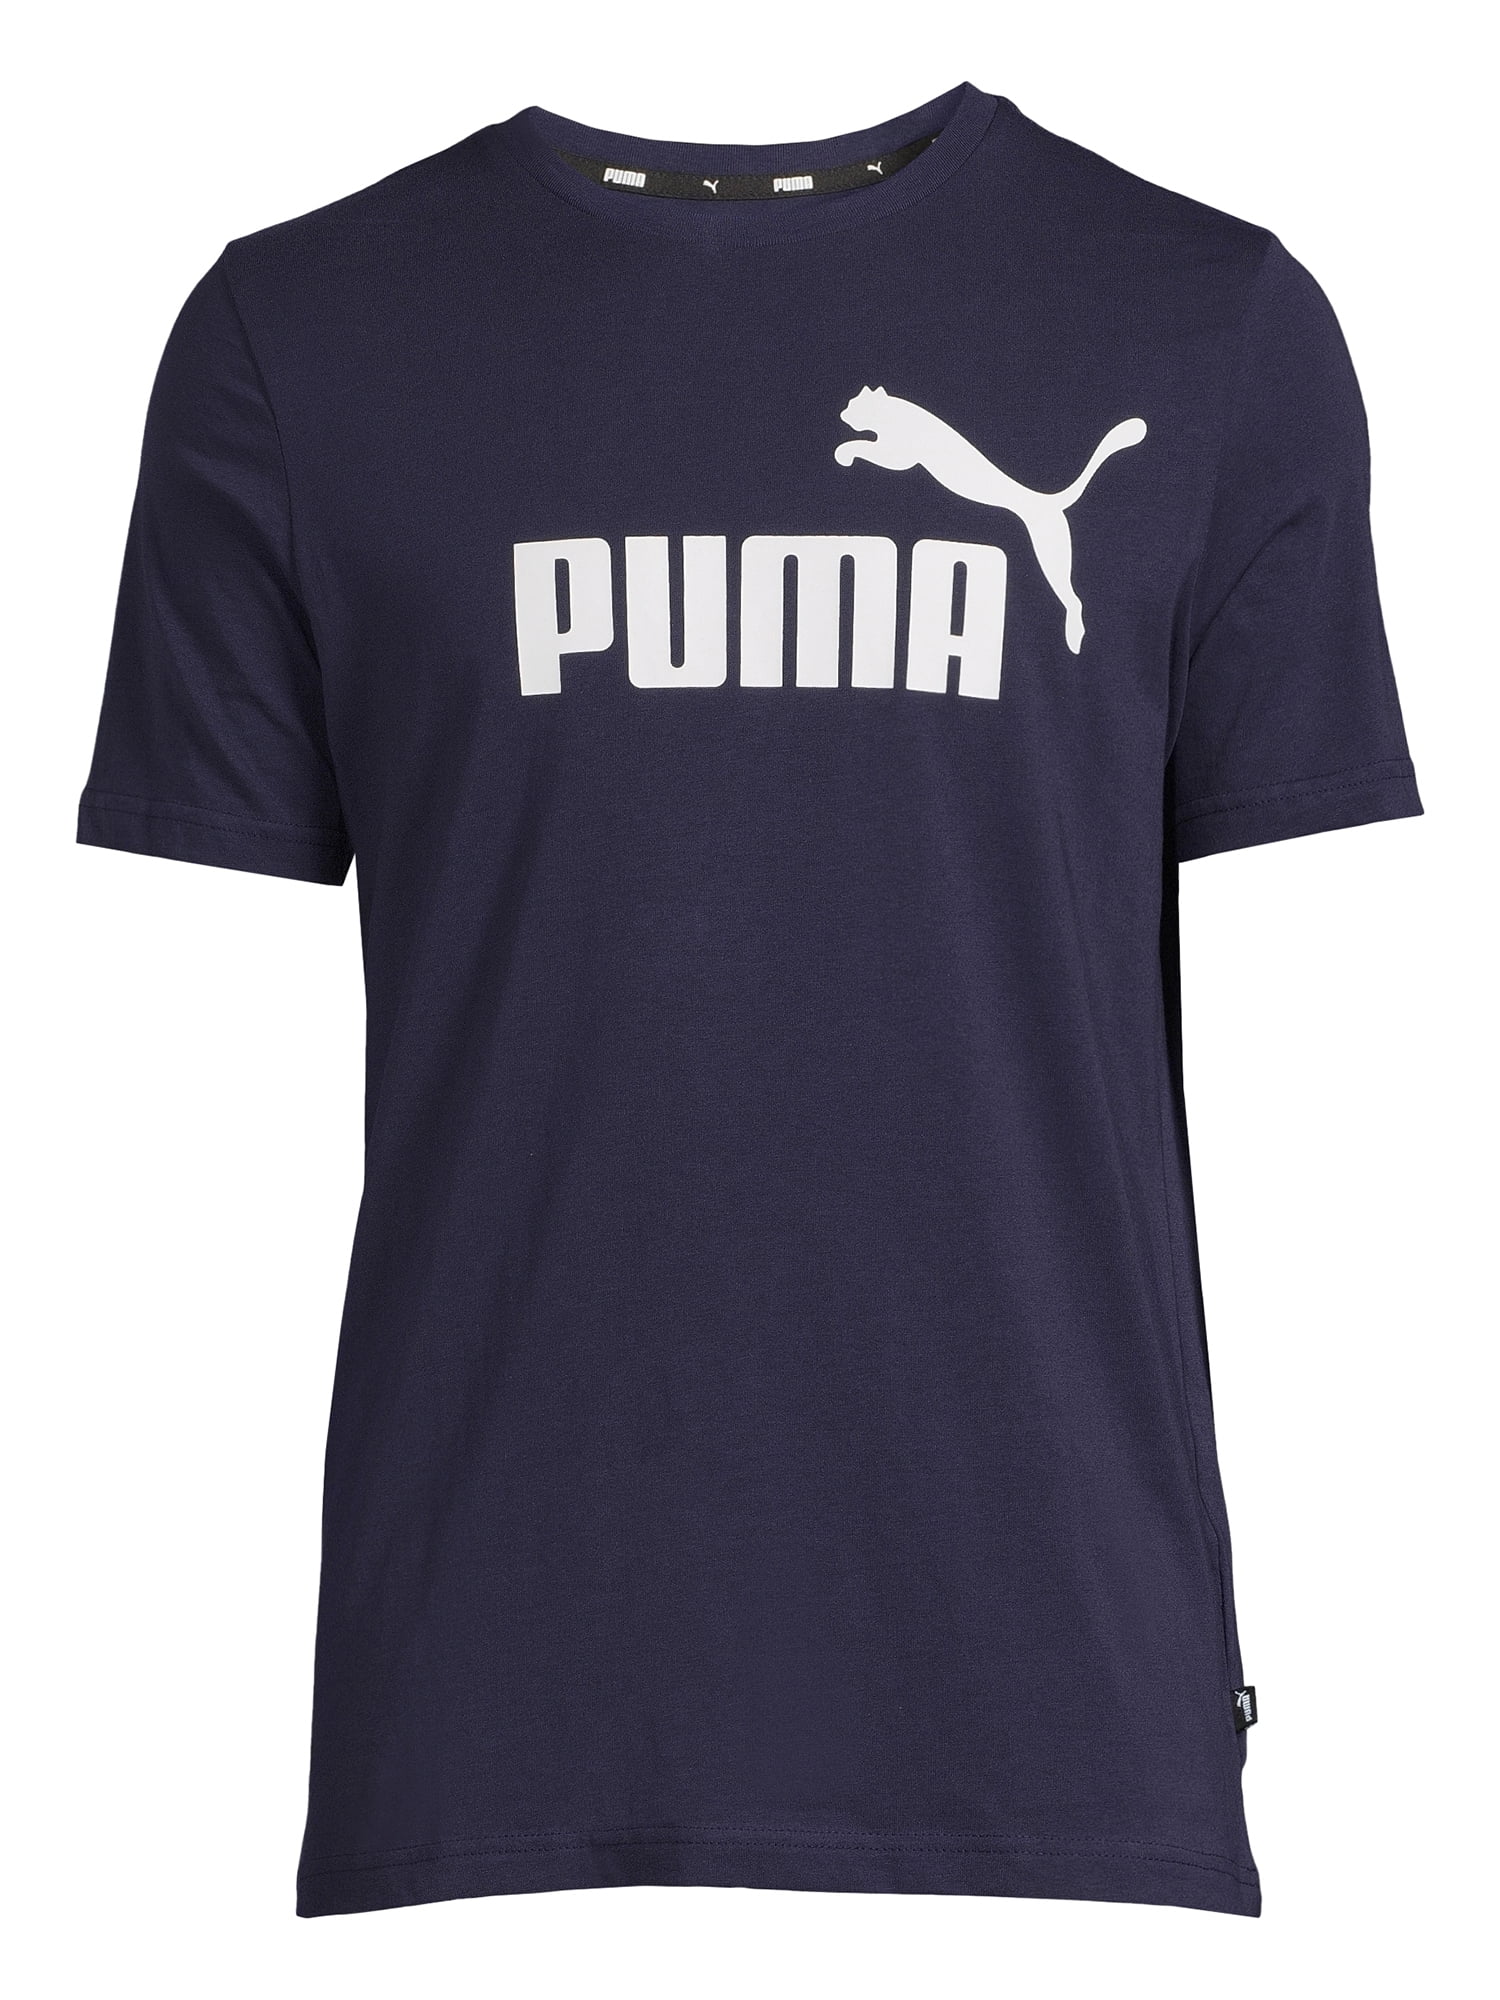 La tia de la USA - Camiseta PUMA HOMBRE : 80 mil pesos disponibles talla M,  originales con garantía y envió gratis @latiadelausa #puma #camisetas  #original #colombia #camisa #originales #latiadelausa